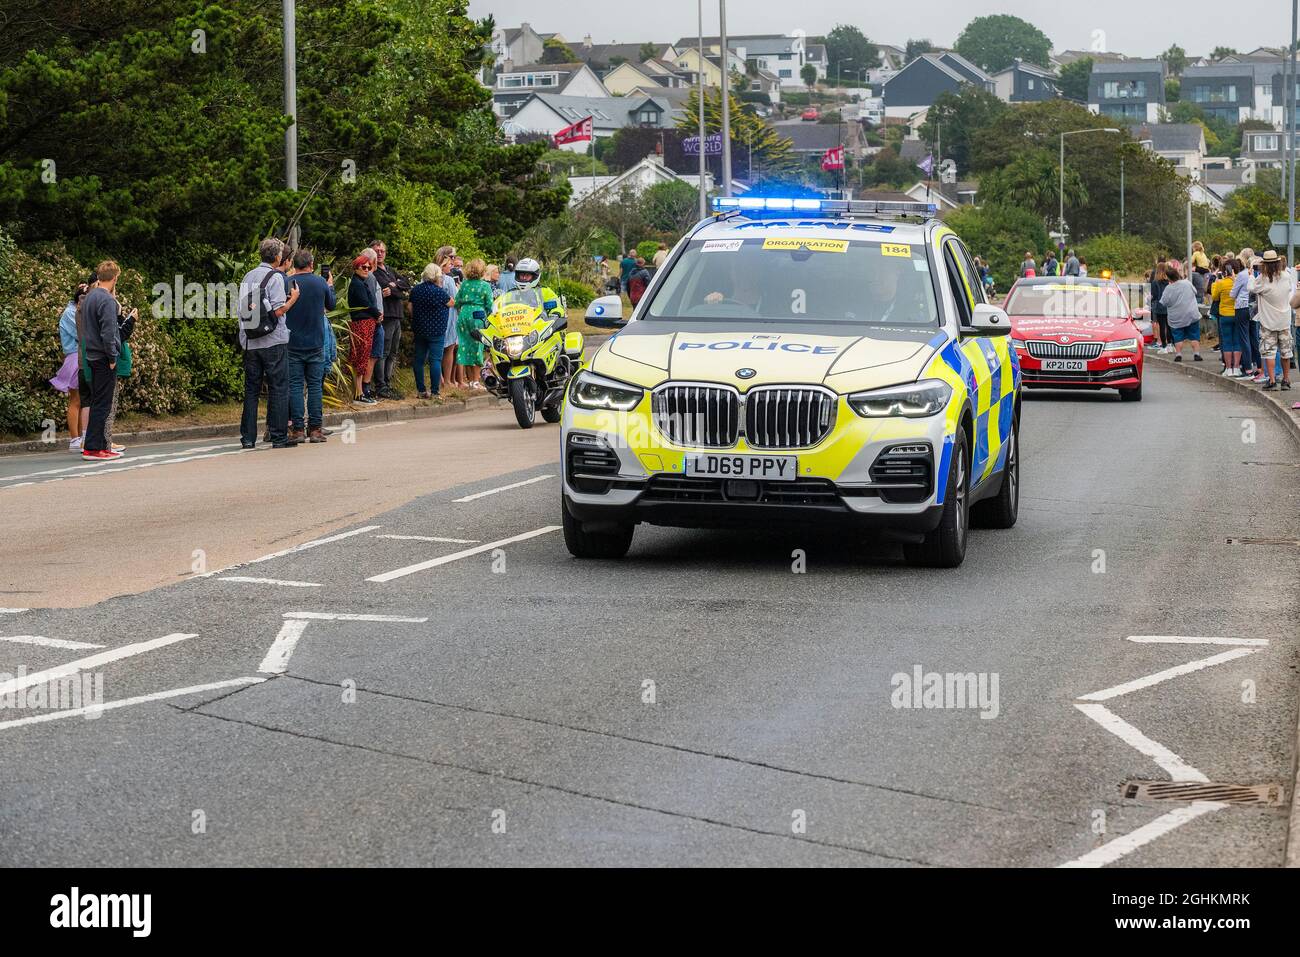 Un'auto pattugliata della polizia con luci blu che guidano a Newquay in Cornovaglia durante la fase di apertura dell'iconico Tour of Britain 2021, conosciuto come il Grand Foto Stock